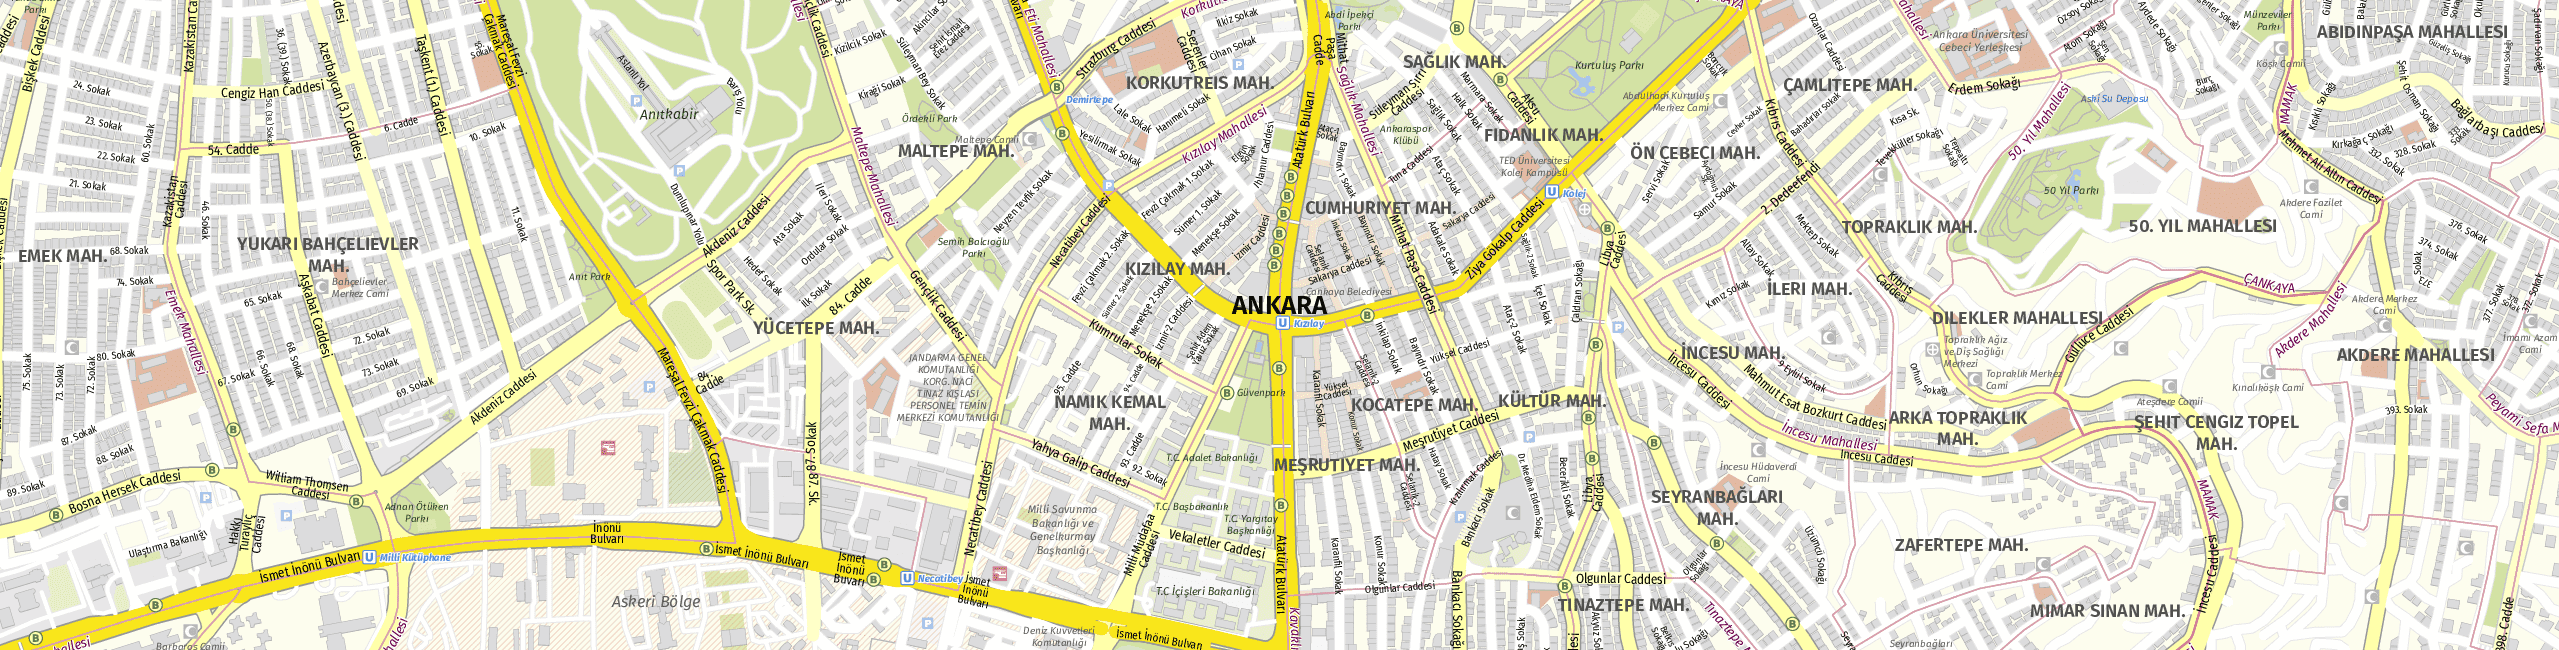 Stadtplan Ankara zum Downloaden.